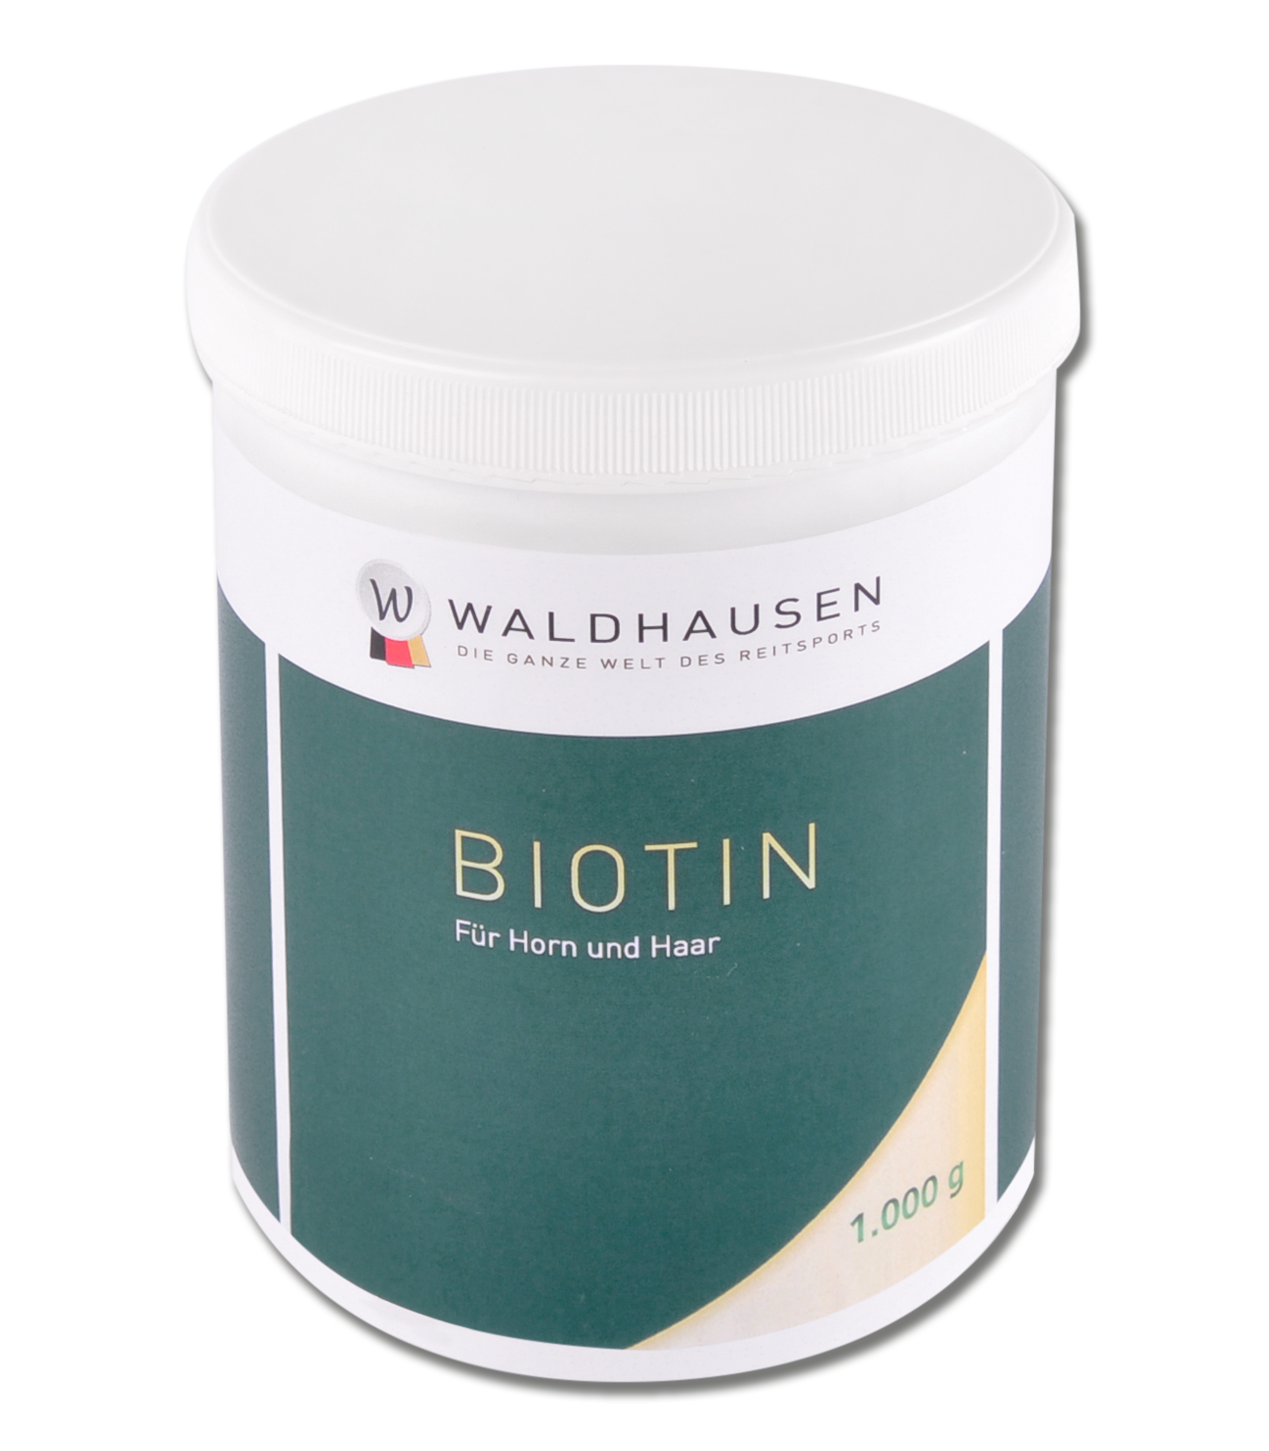 Waldhausen Biotin – Für Horn und Haar 1 kg